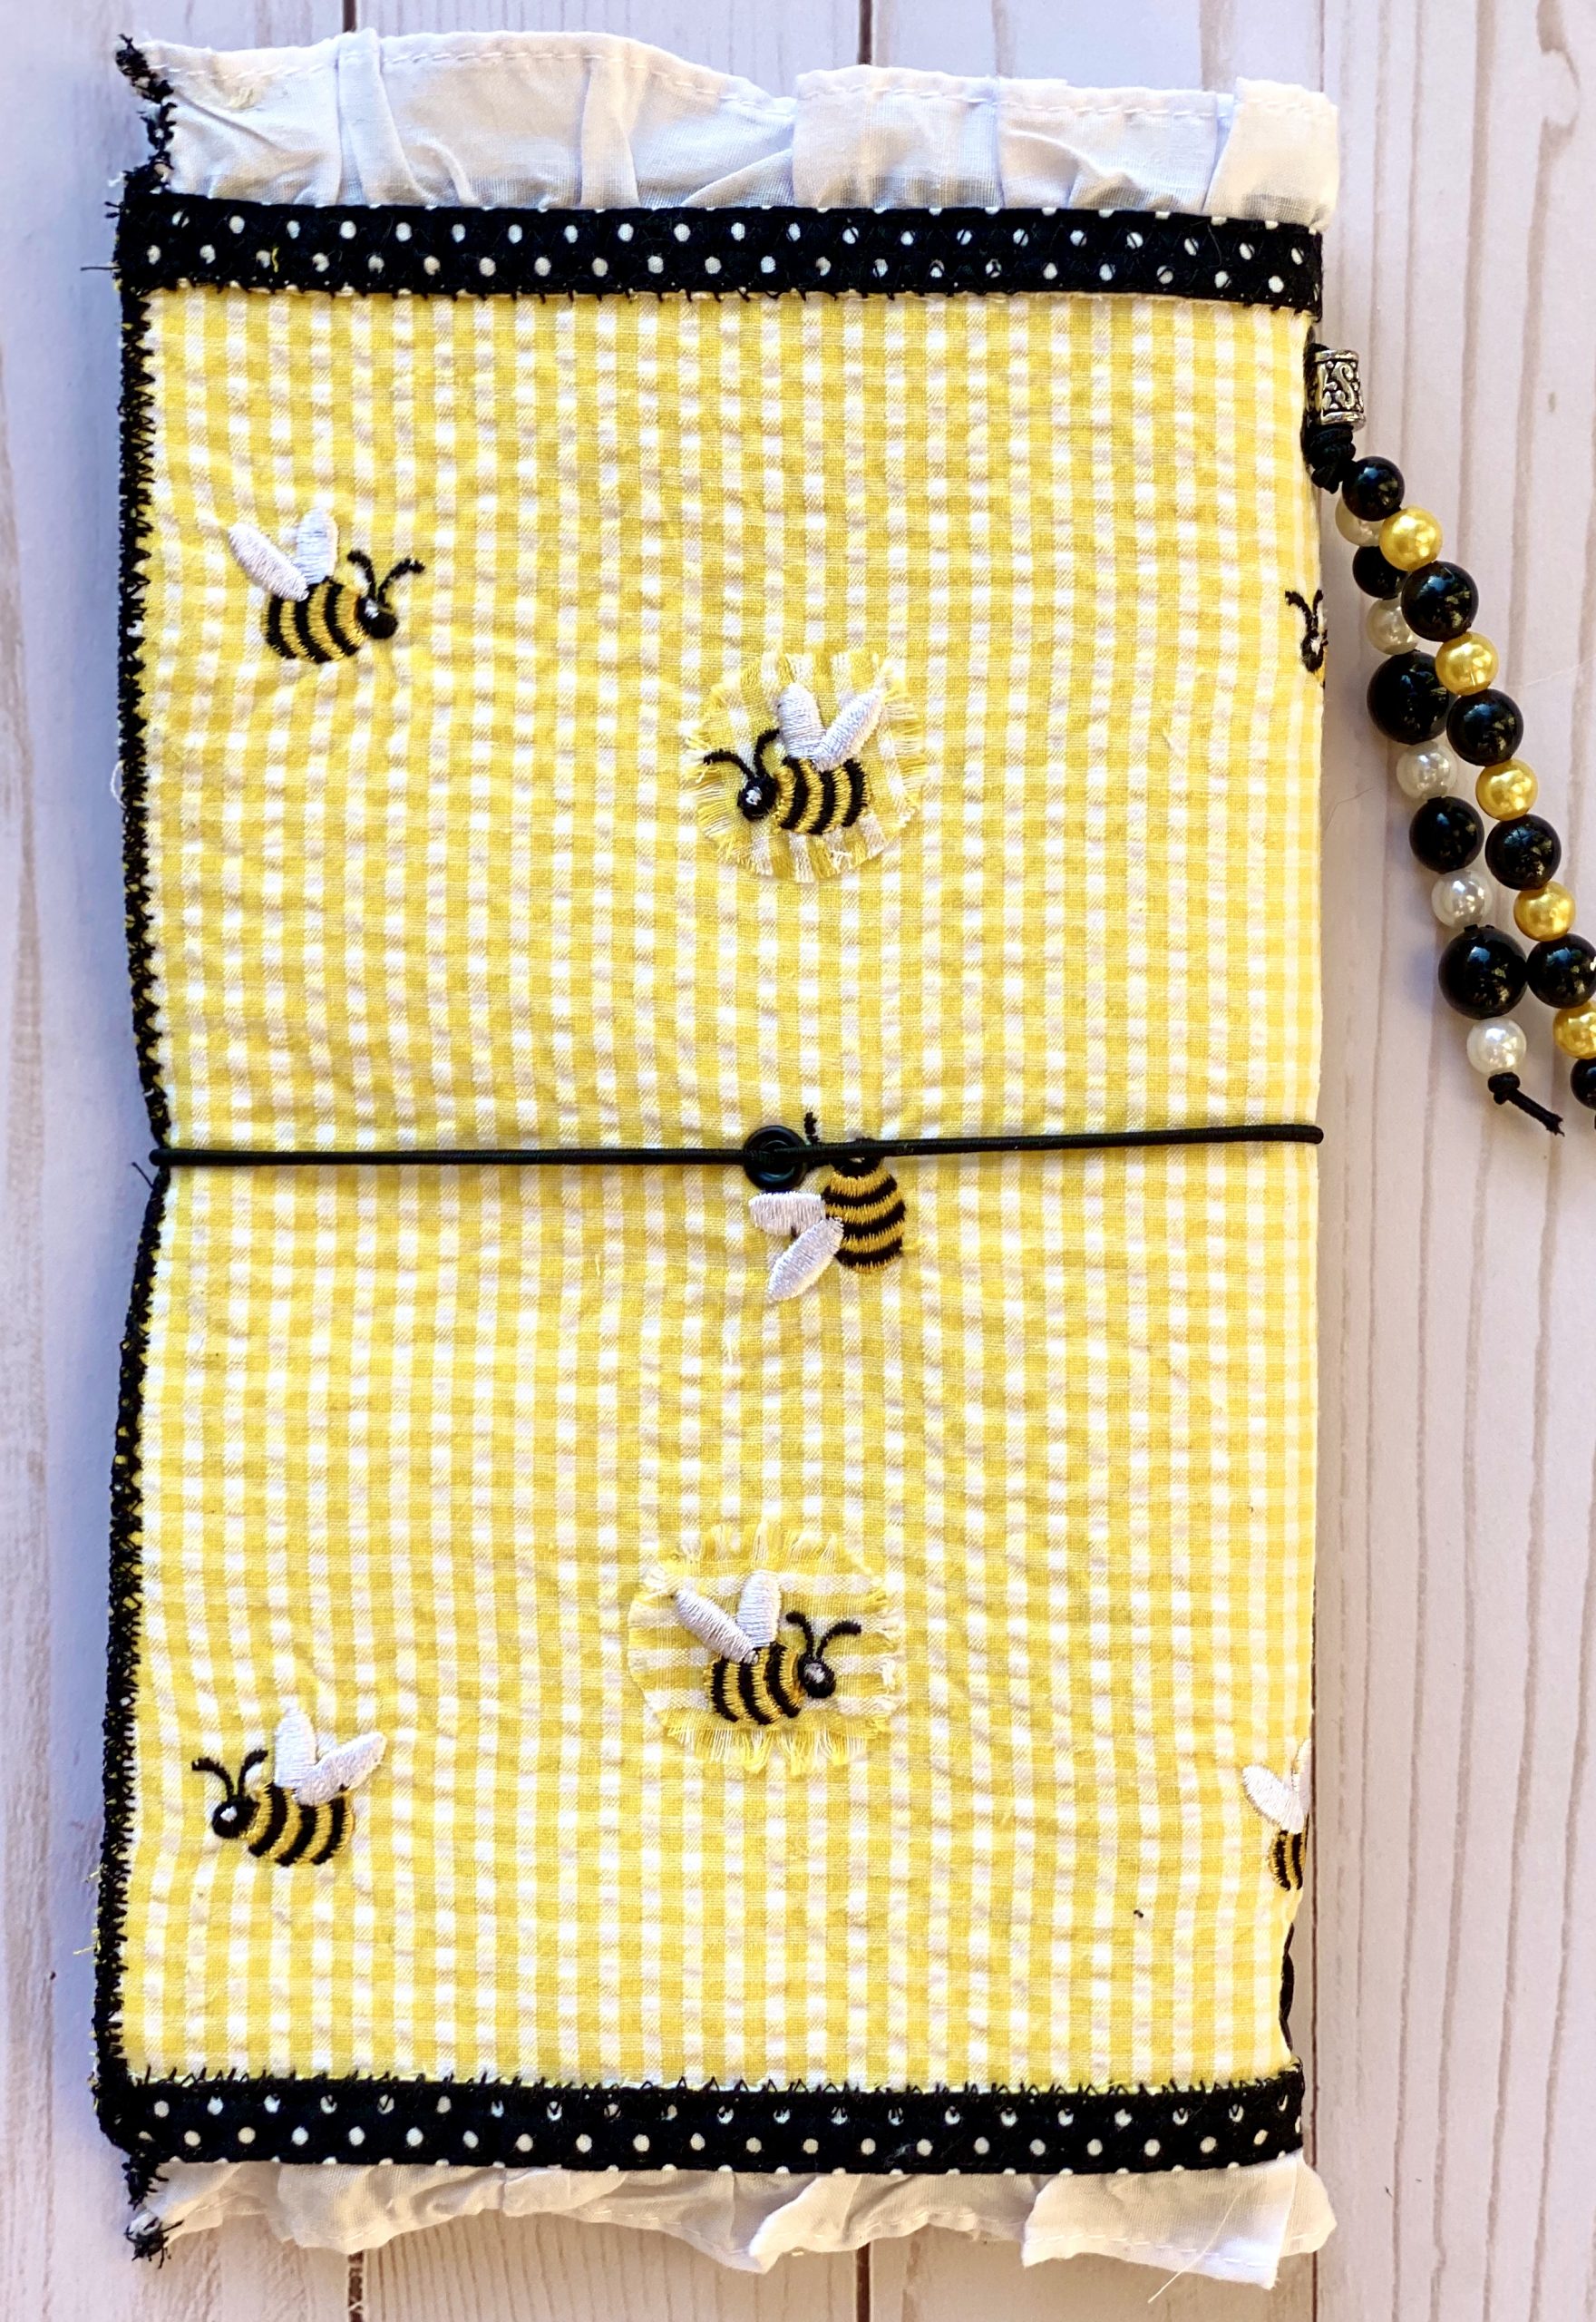 Back cover of honeybee journal